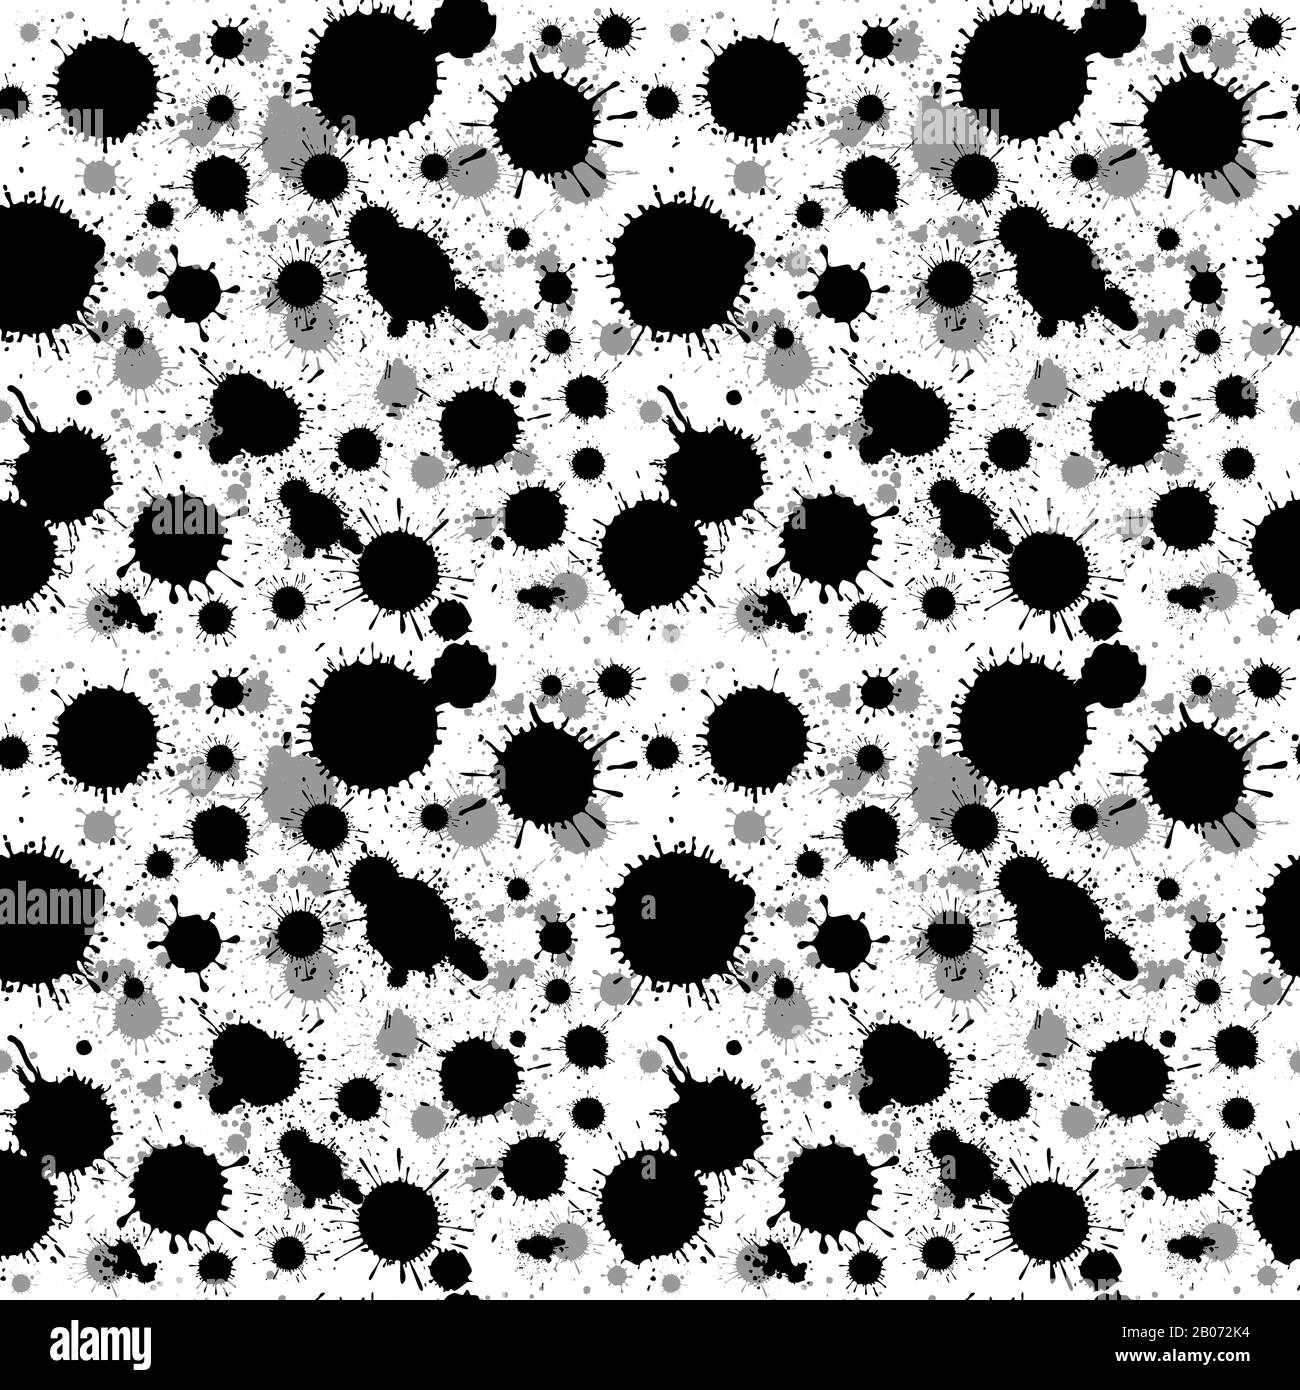 Splattered ink blot grunge vector seamless texture. Gray and black splatter brush illustration Stock Vector